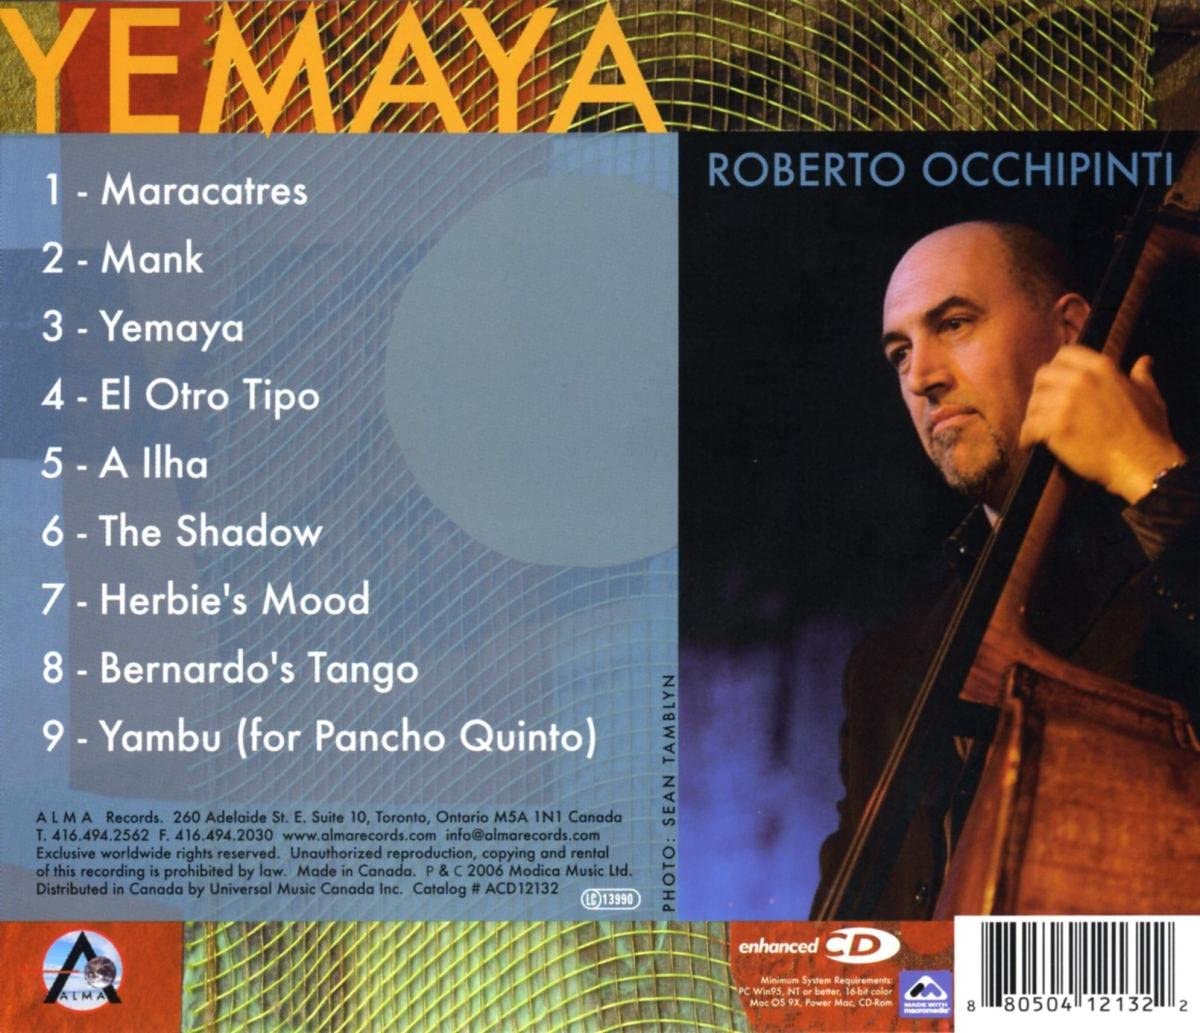 Roberto Occhipinti - Yemaya - USED CD